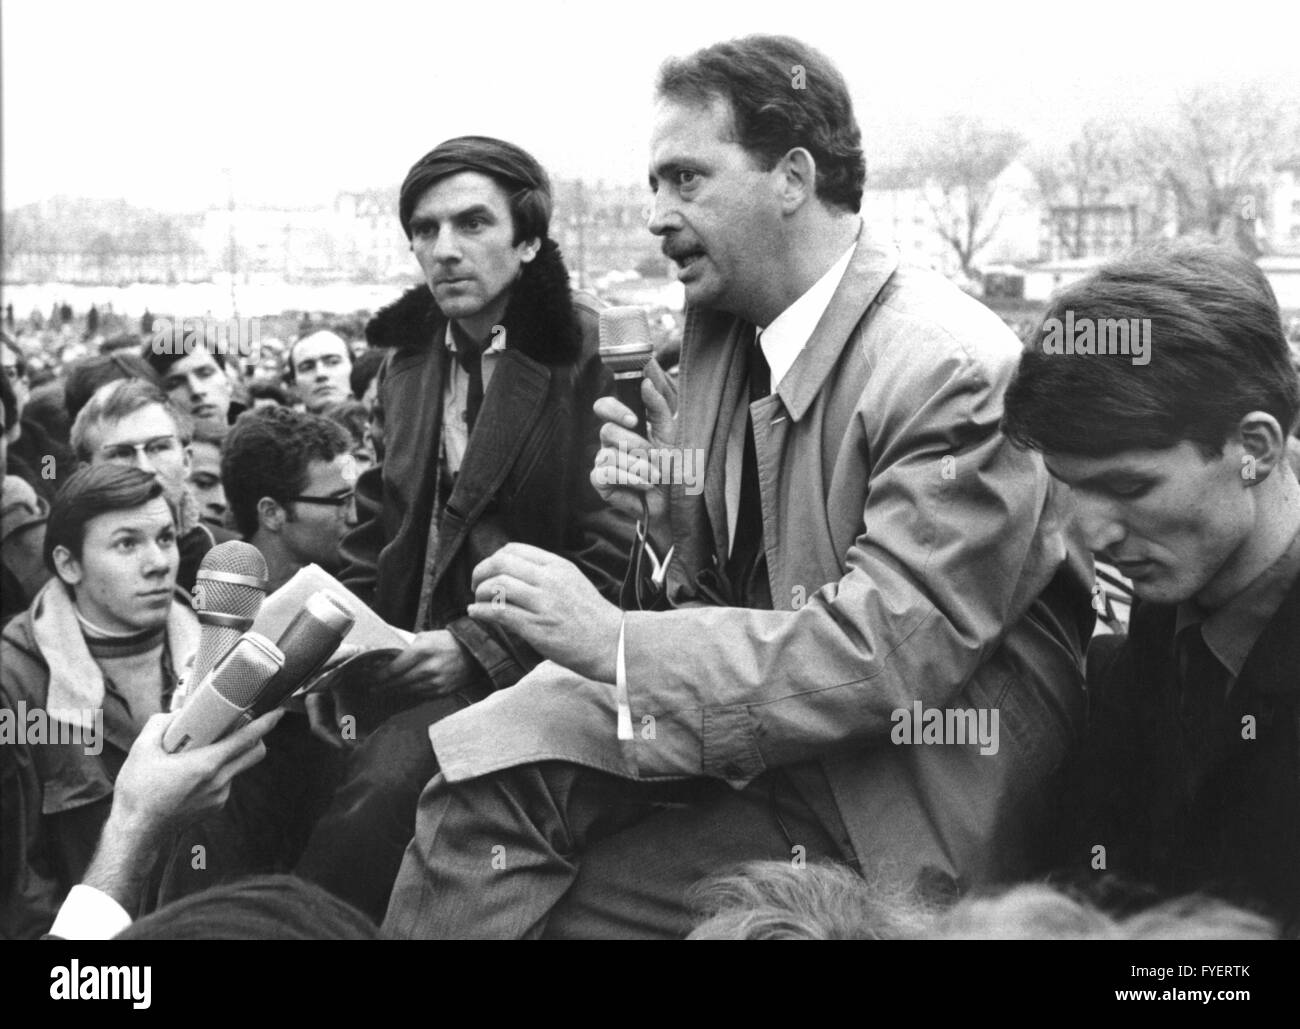 Le porte-parole étudiant Rudi Dutschke (l) et le professeur Ralf Dahrendorf (l) le 30 janvier 1968 à Freiburg d'avoir une discussion en face de quelques milliers d'auditeurs. Banque D'Images